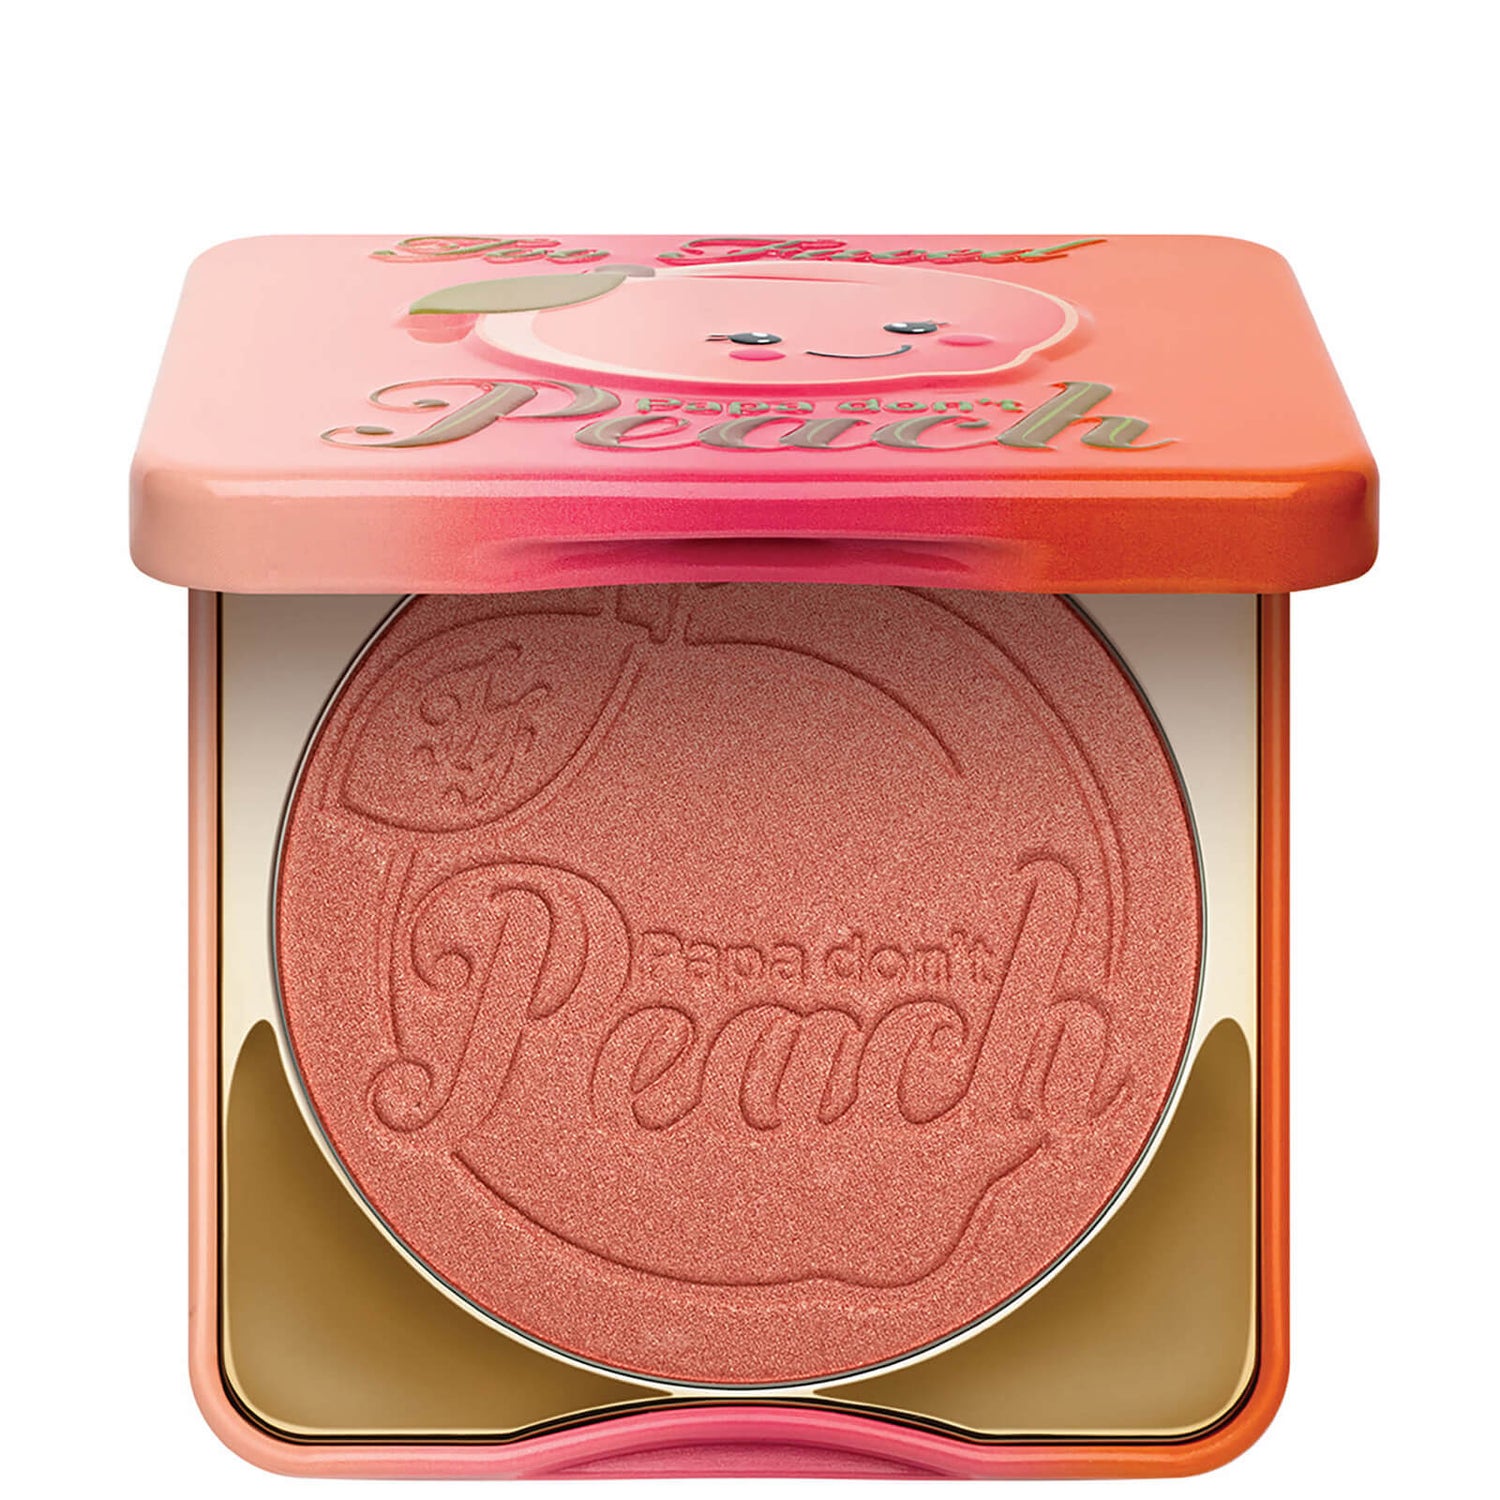 Too Faced Blush - Papa Don't Peach 9g